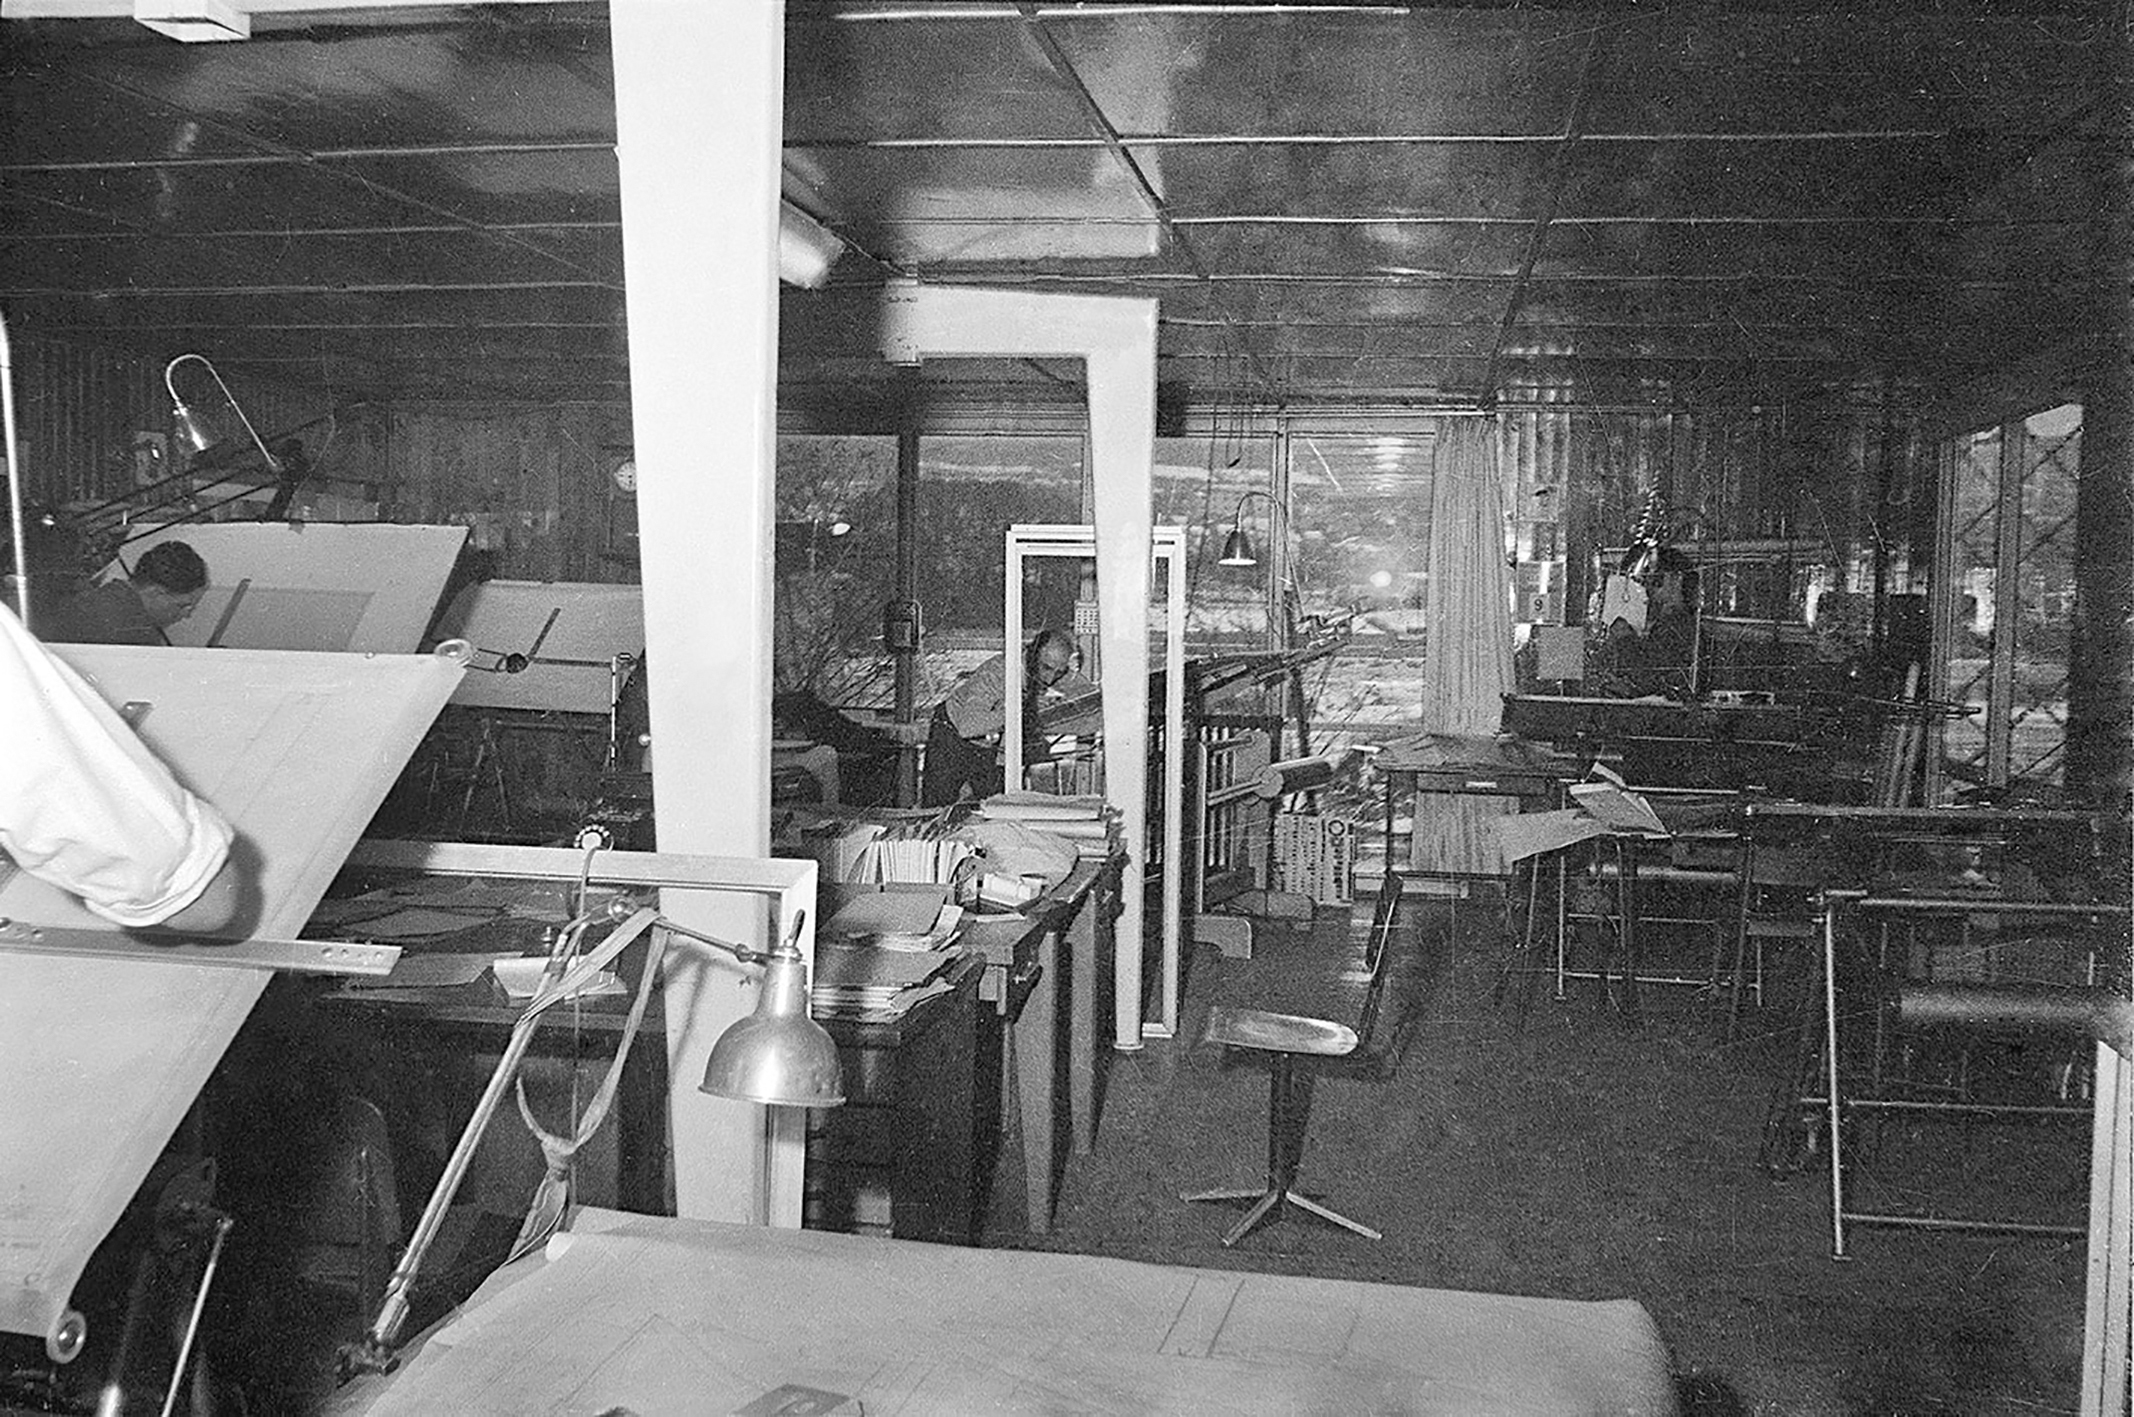 Ateliers Jean Prouvé design office, c. 1952.